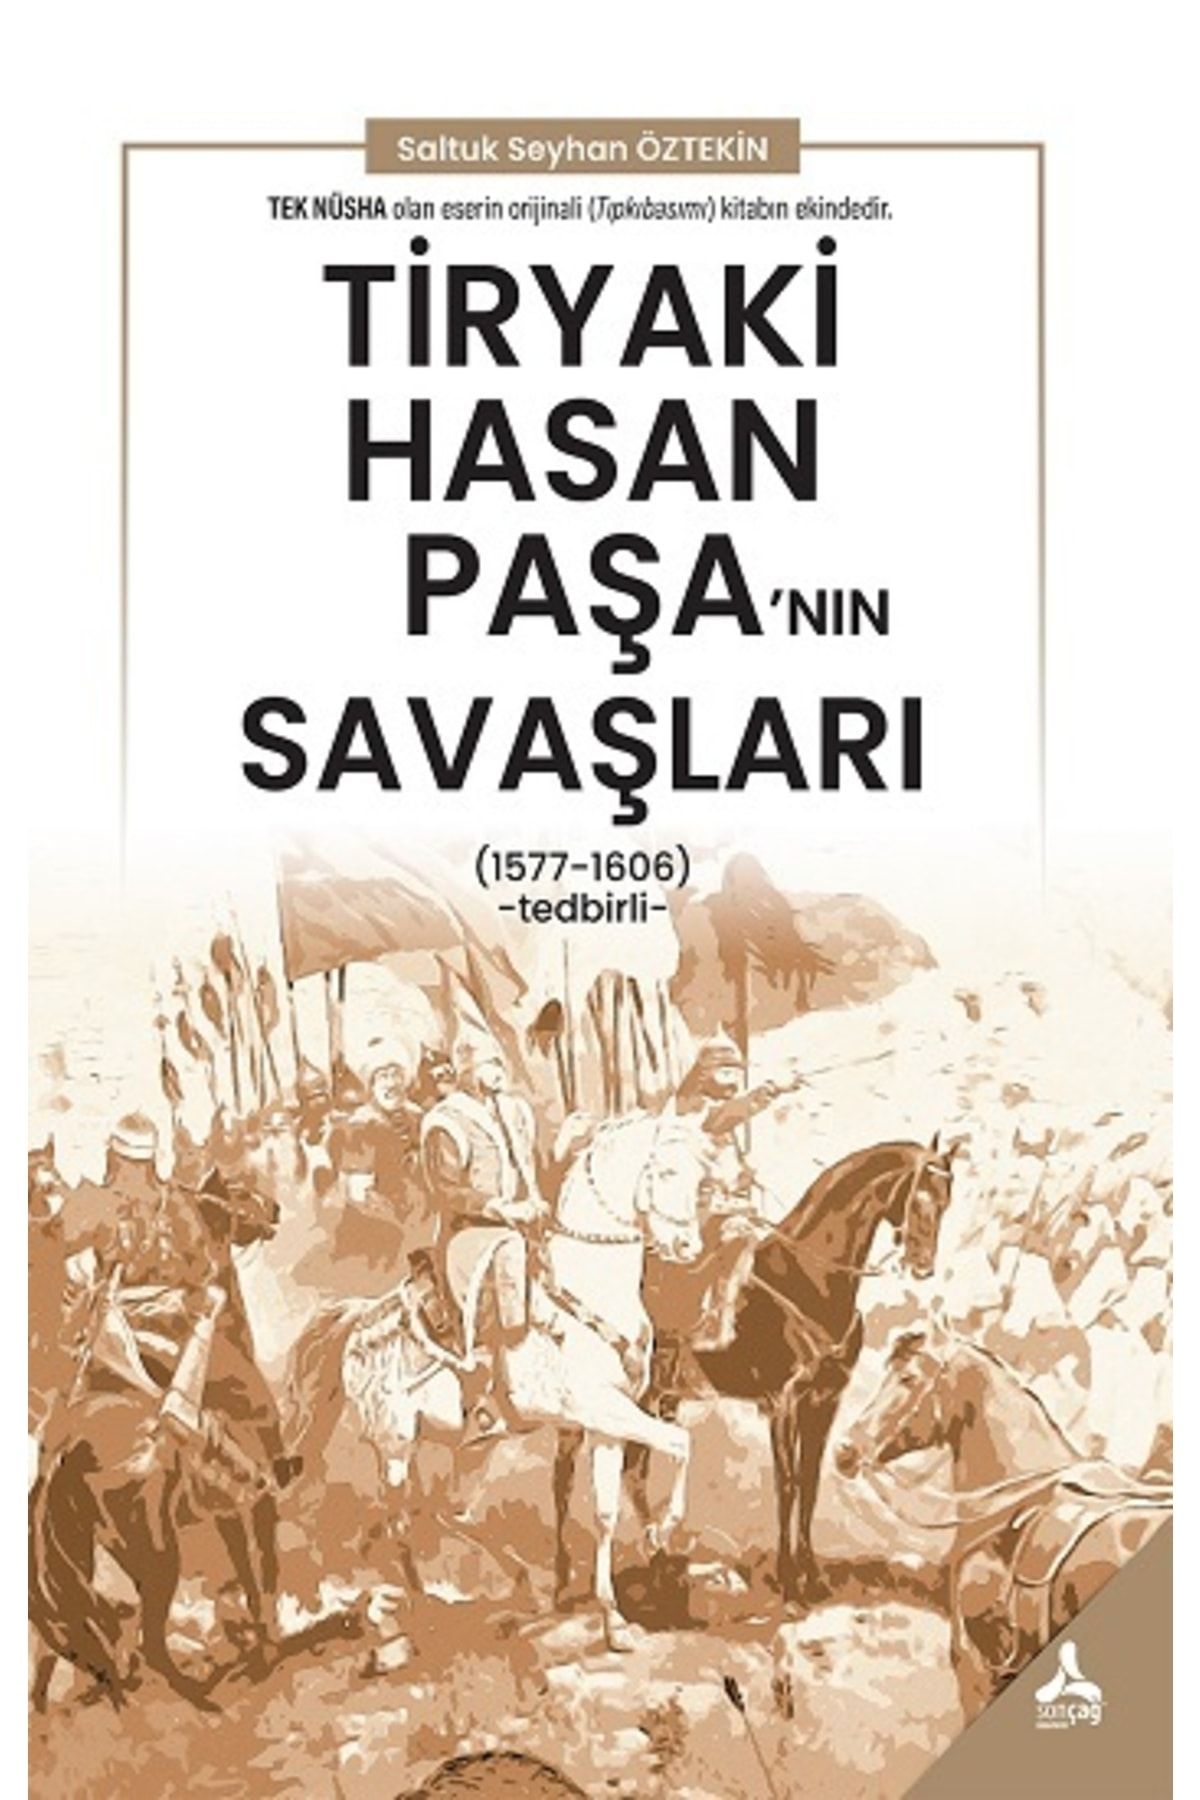 Sonçağ Yayınları Tiryaki Hasan Paşa’nın Savaşları (1577 - 1606) - Sonçağ -akademik Kitaplar - Saltuk Seyhan Öztekin K